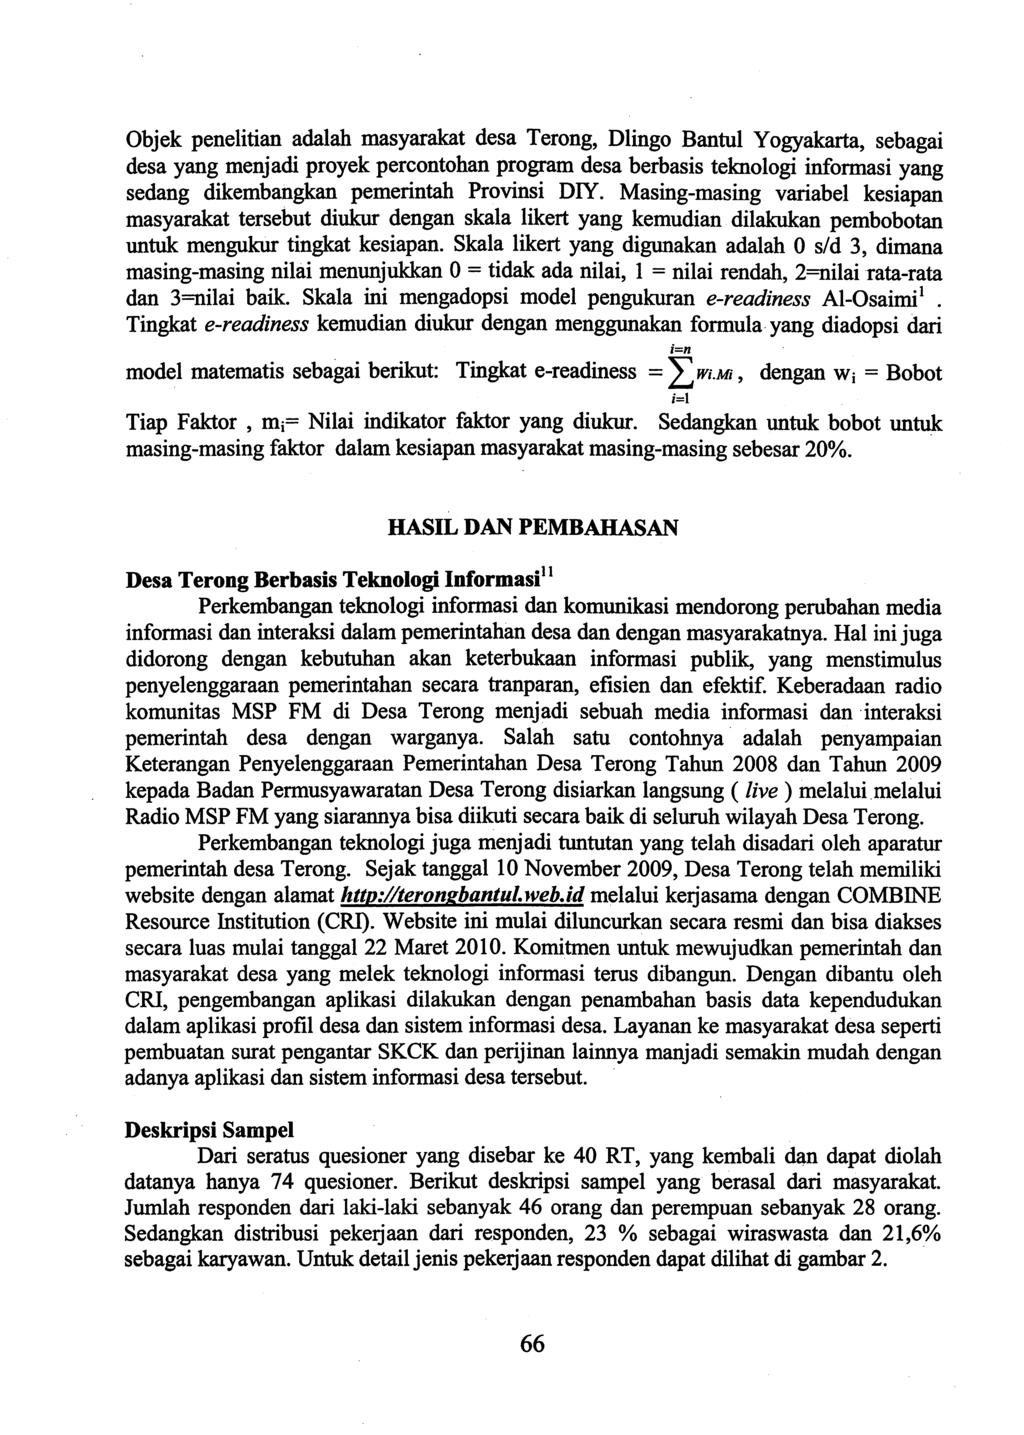 Objek penelitian adalah masyarakat desa Terong, Dlingo Bantul Yogyakarta, sebagai desa yang menjadi proyek percontohan program desa berbasis teknologi informasi yang sedang dikembailgkan pemerintah